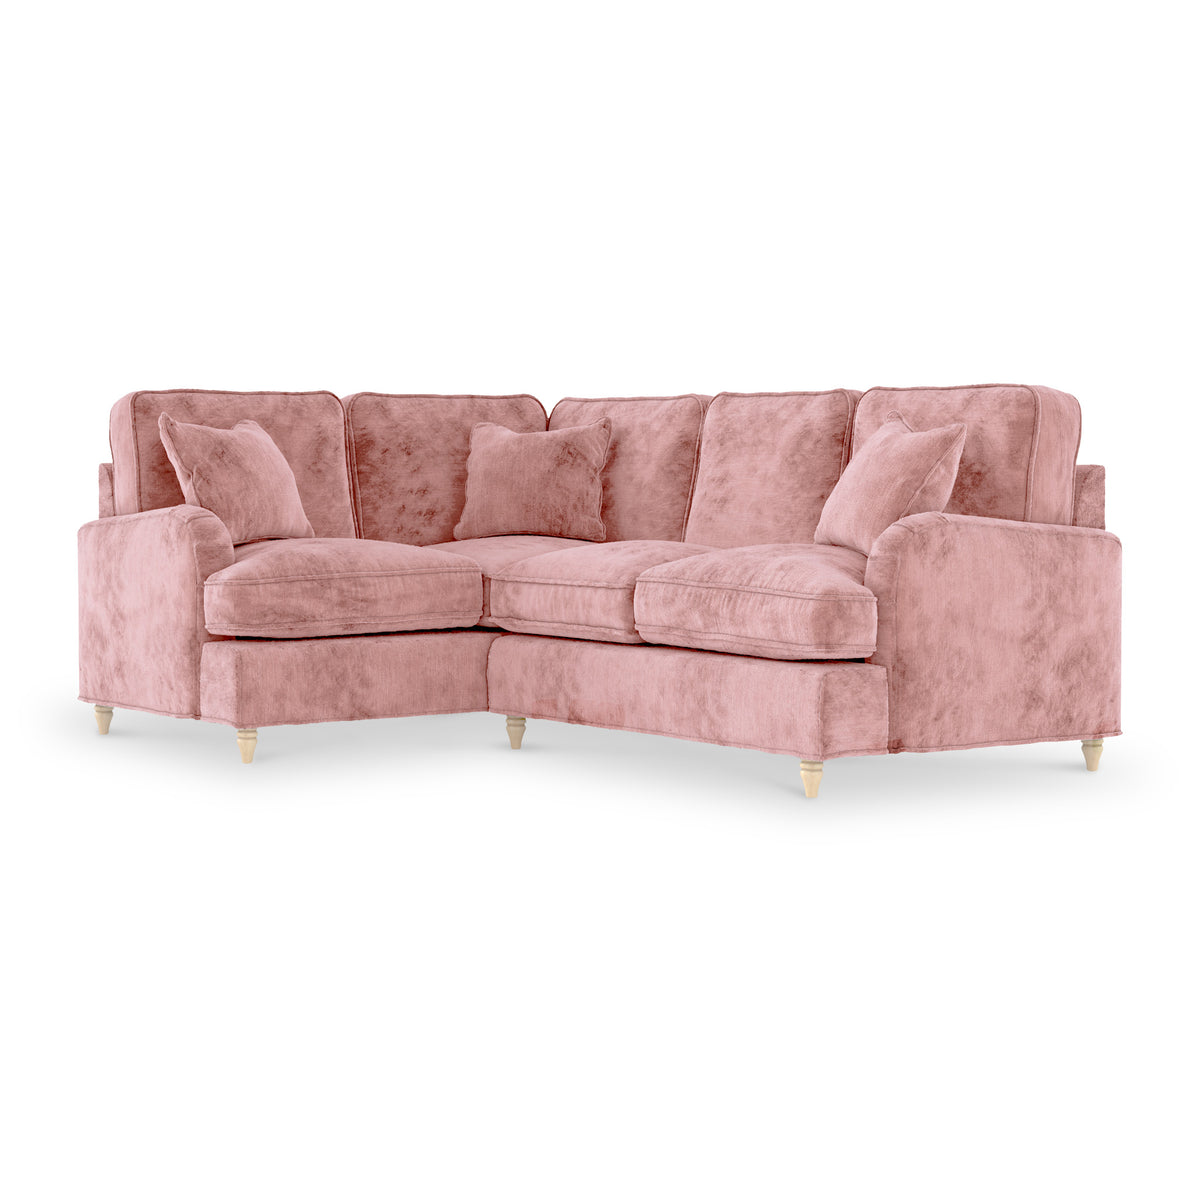 Arthur Blush Pink LH Corner Sofa from Roseland Furniture